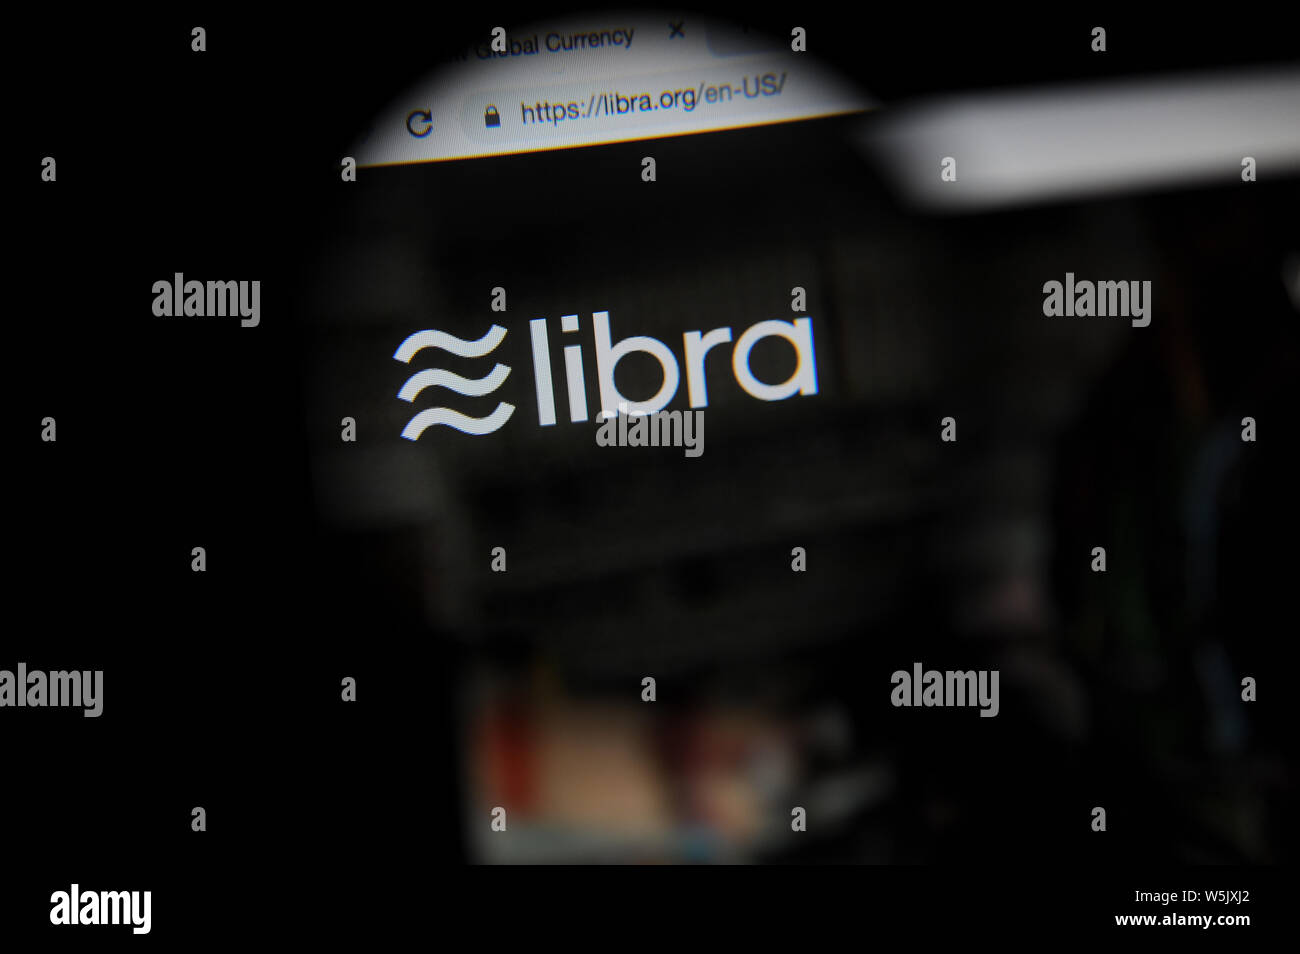 El libra cryptocurrency website vistos a través de una lupa, Libra está siendo desarrollado por Facebook Inc. Foto de stock